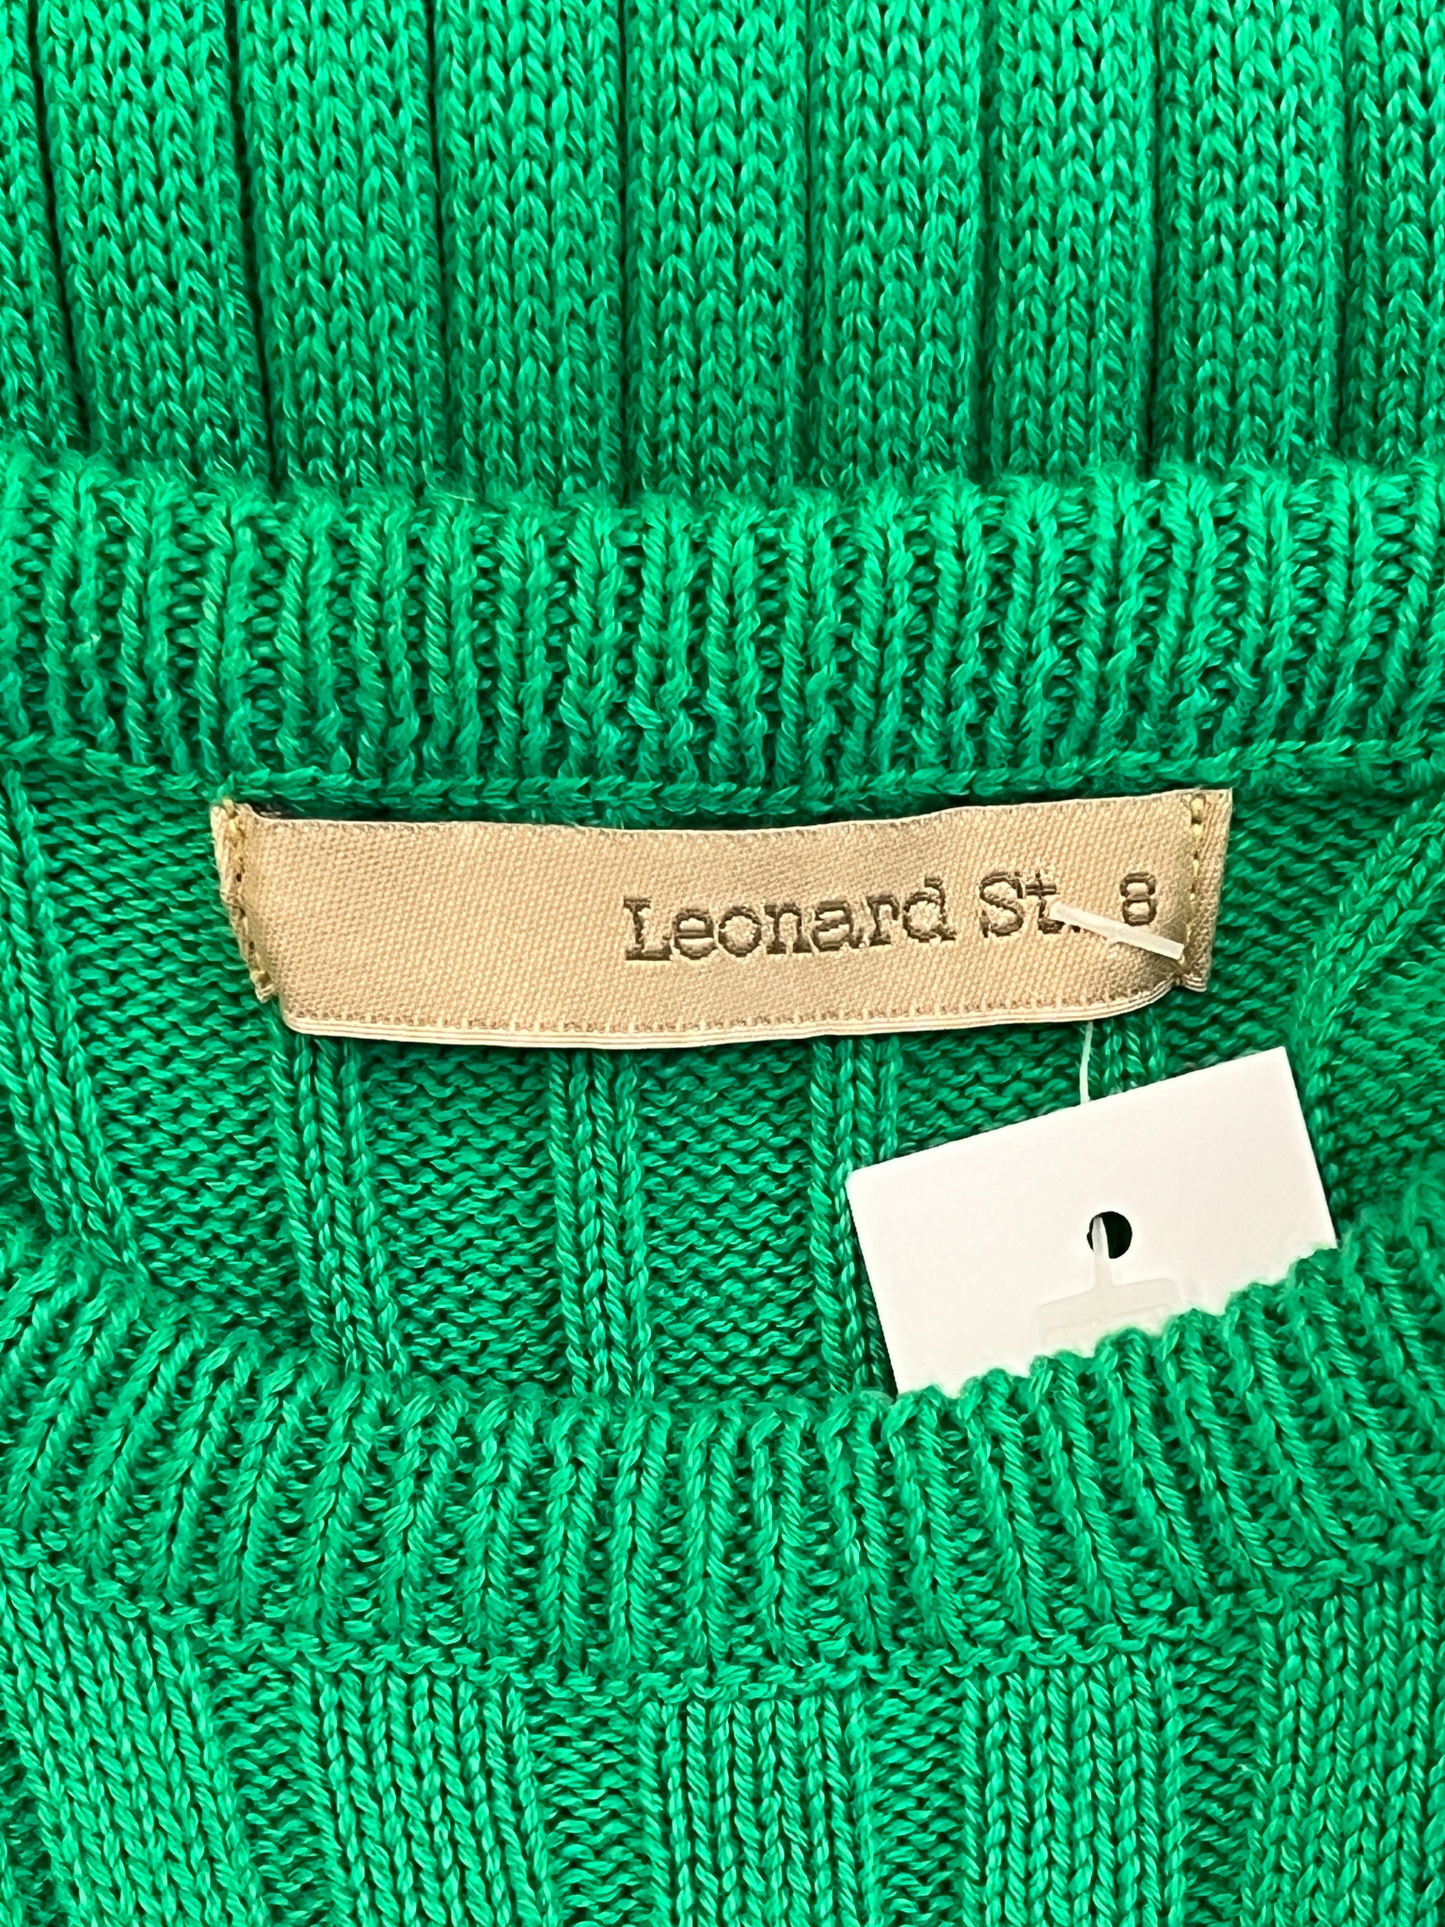 Size 8 - Leonard St Green Rib Knit Maxi Dress